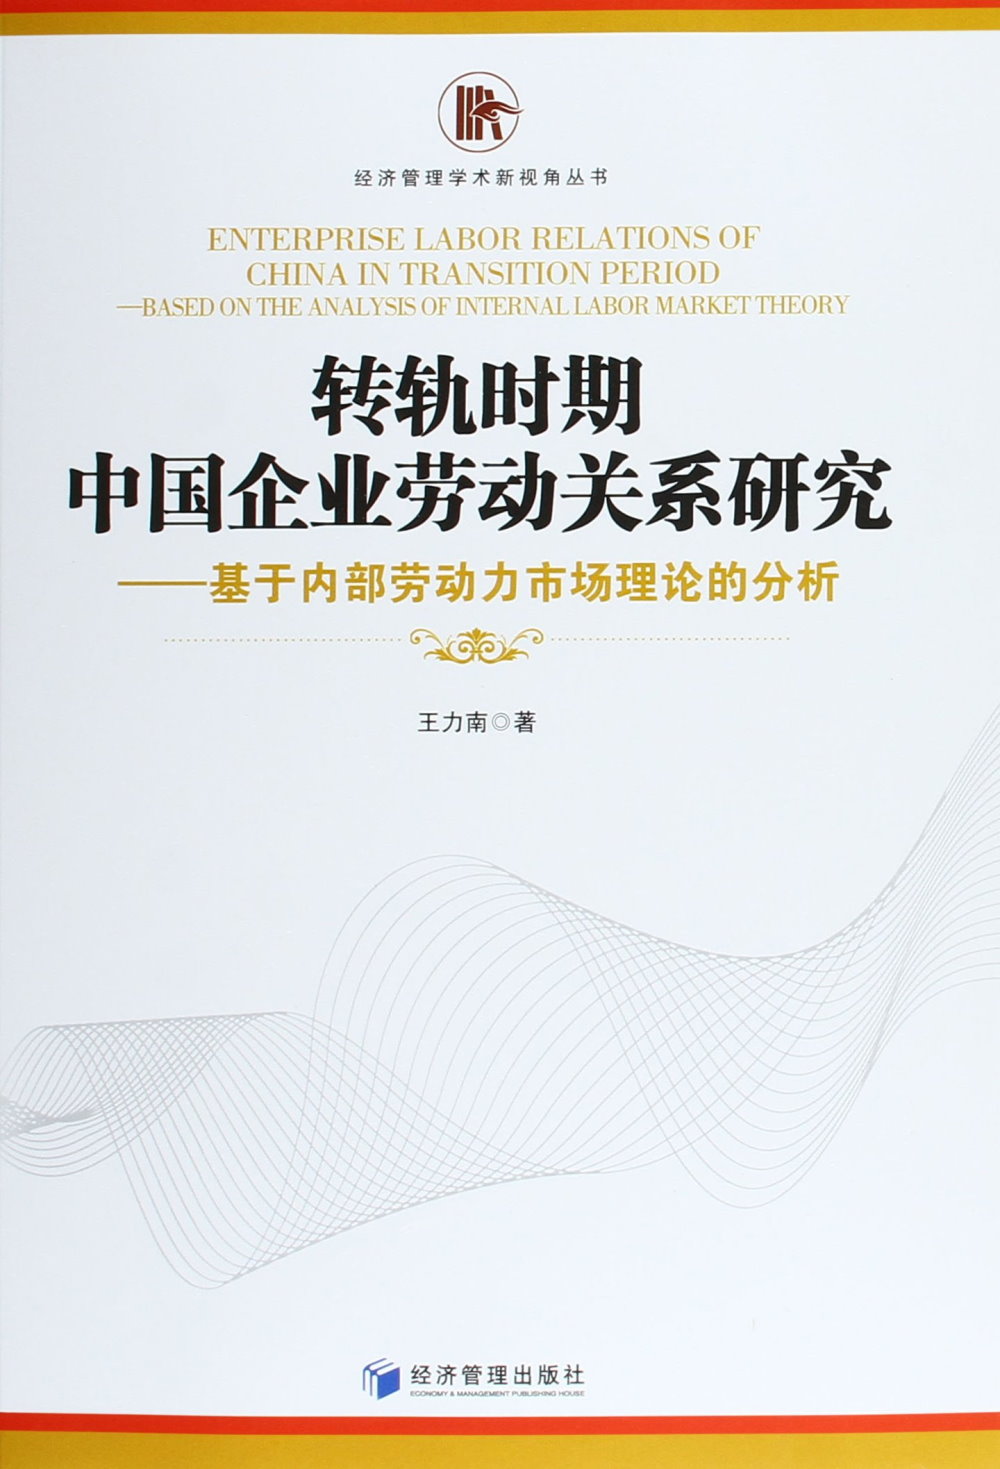 轉軌時期中國企業勞動關系研究：基於內部勞動力市場理論的分析